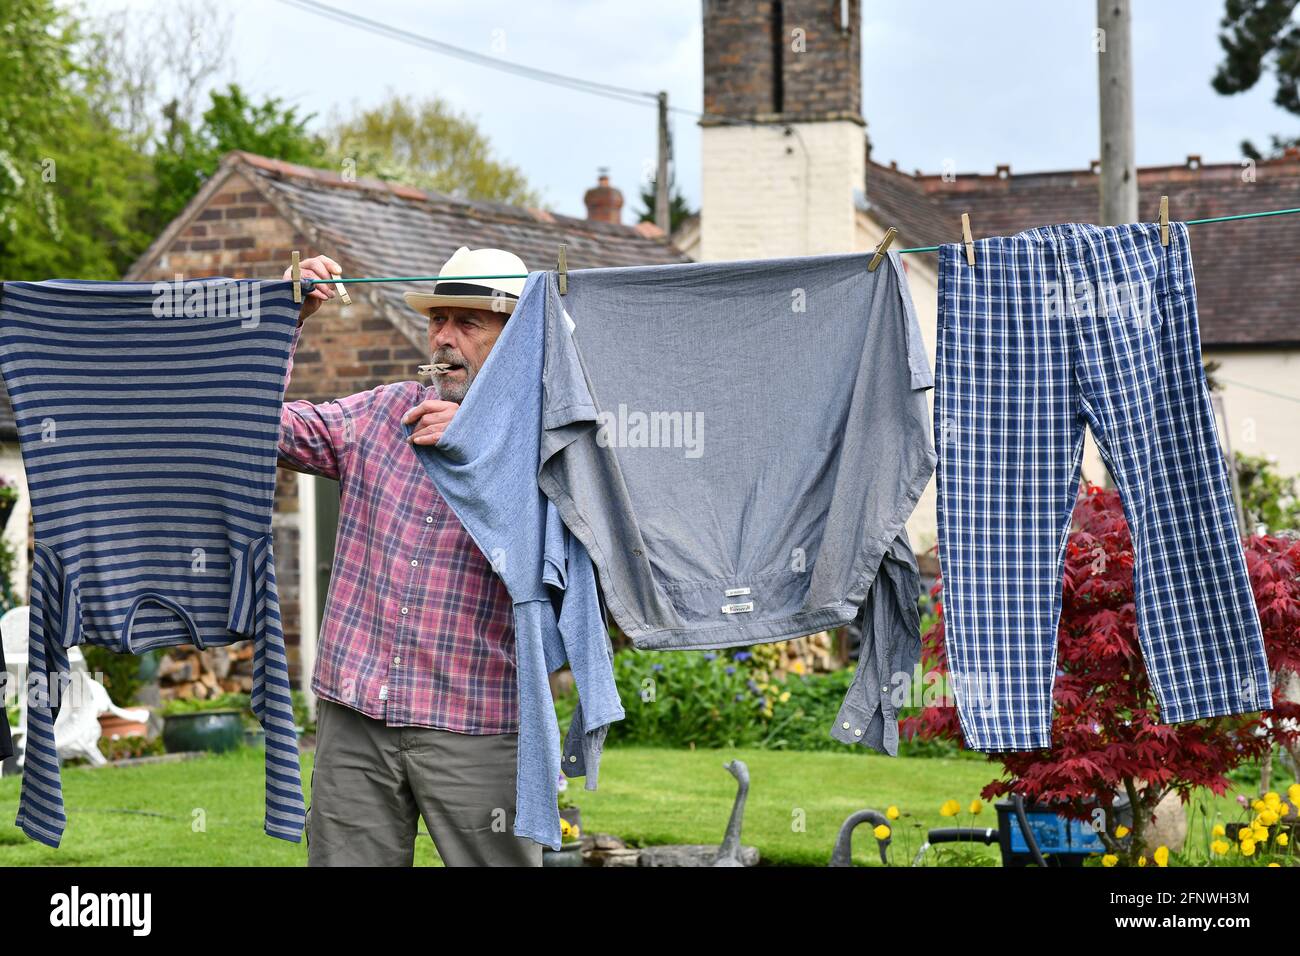 Uomo appeso lavaggio sulla linea di vestiti con i pioli nel giardino Gran Bretagna, UK. Addomesticato maschio che asciuga all'esterno casa chores lavoro uomini Foto Stock